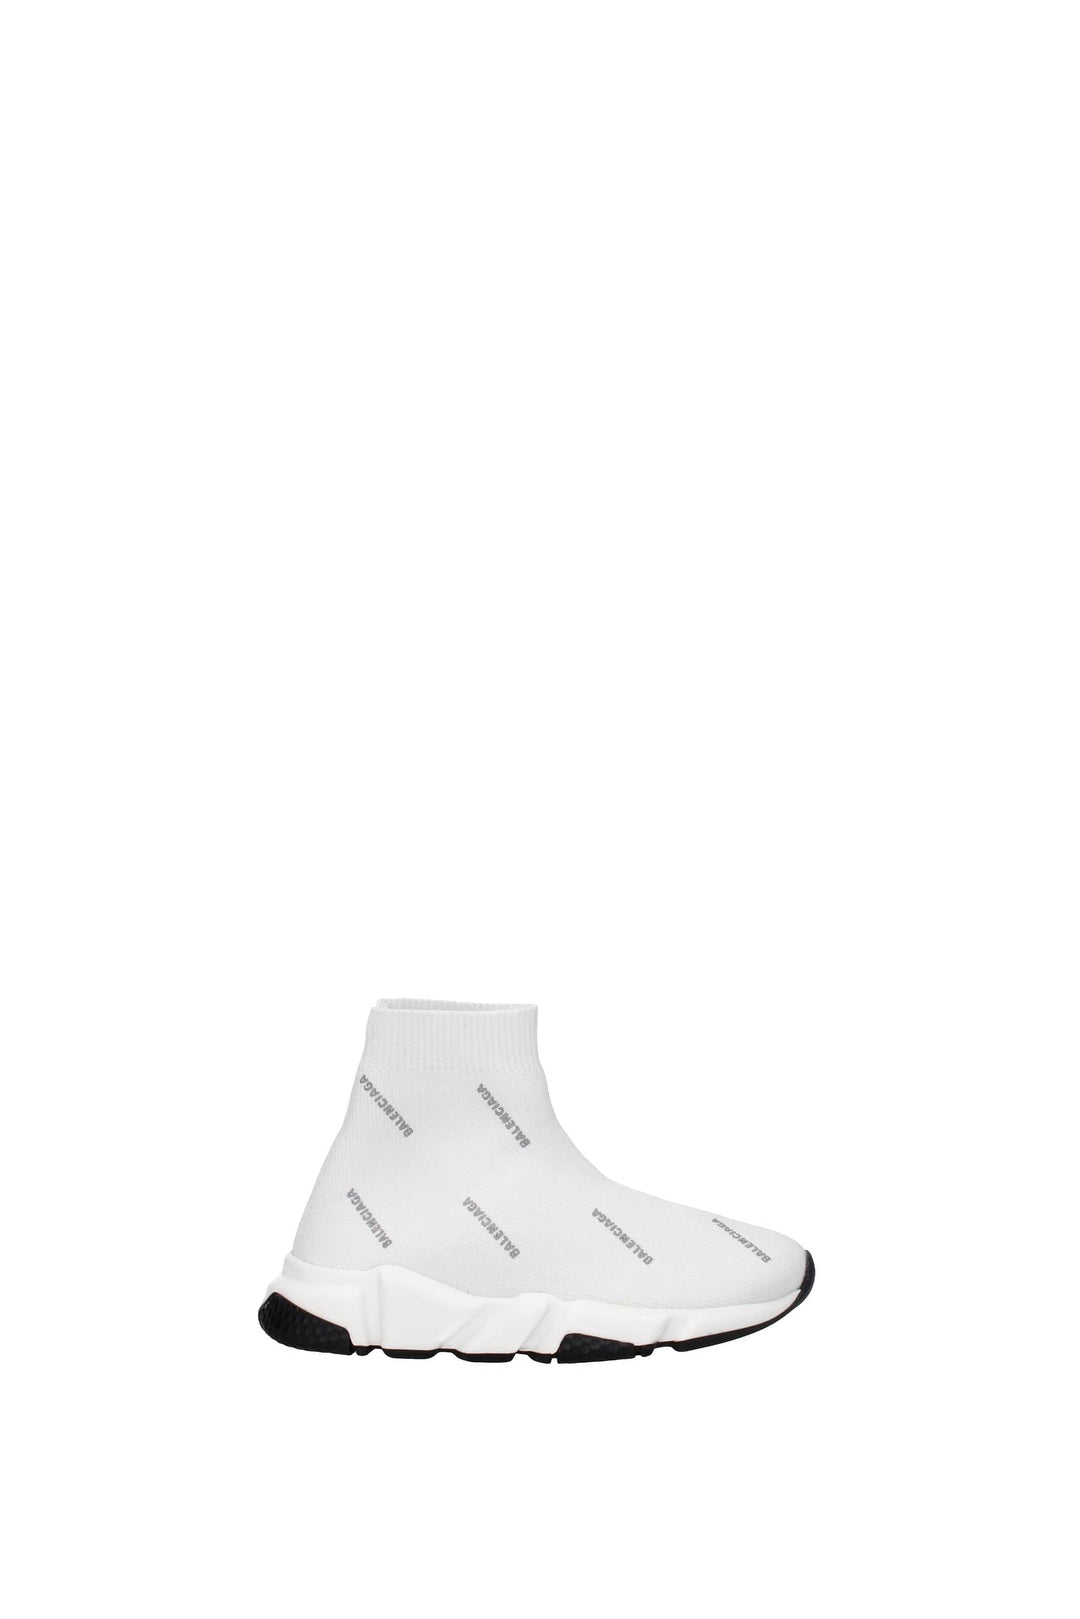 Idee Regalo Sneakers Kids Tessuto Bianco Argento - Balenciaga - Donna